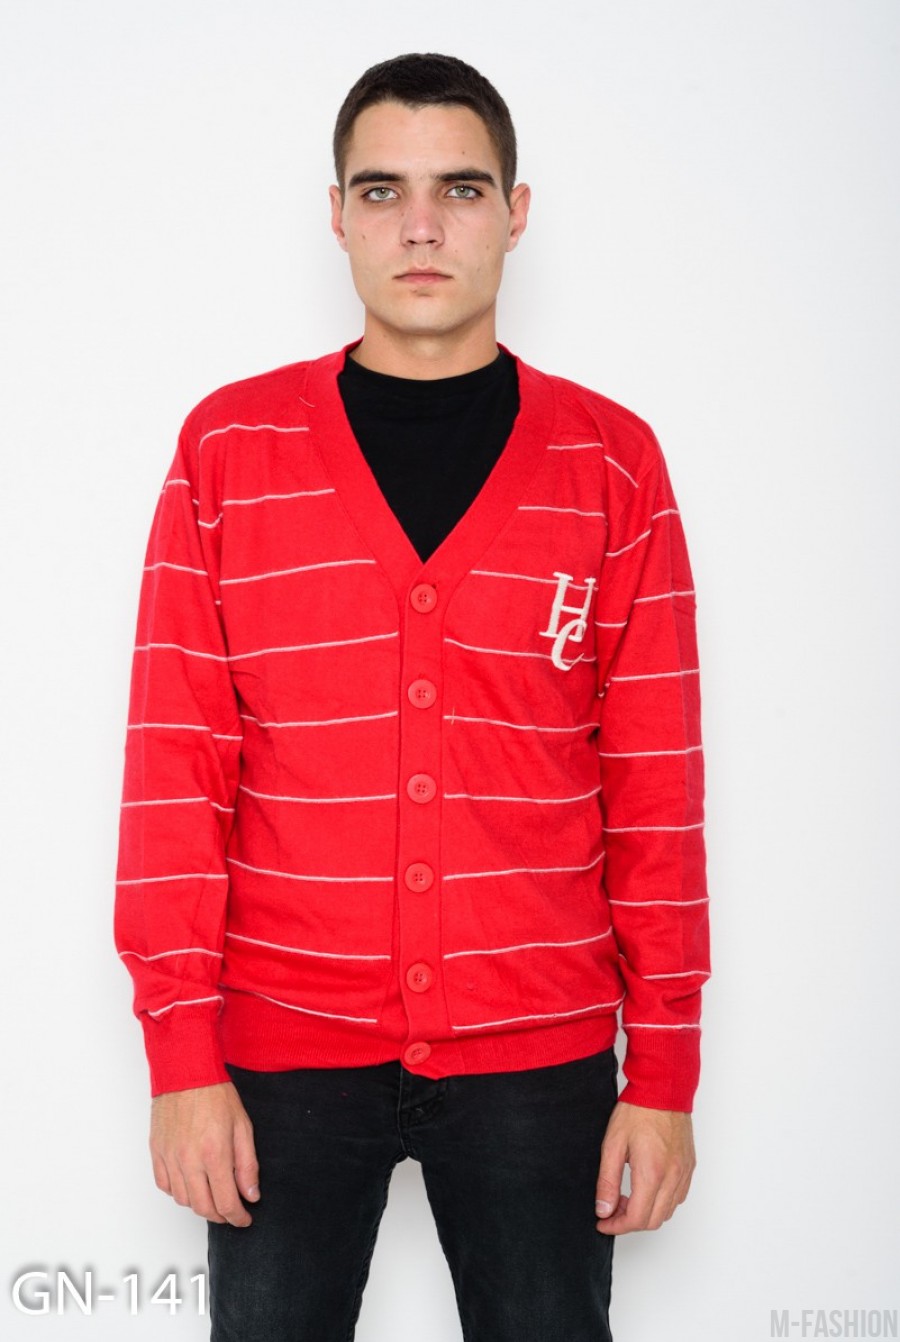 Красный ангоровый свитер с пуговицами и глубоким V-образным вырезом - Фото 1